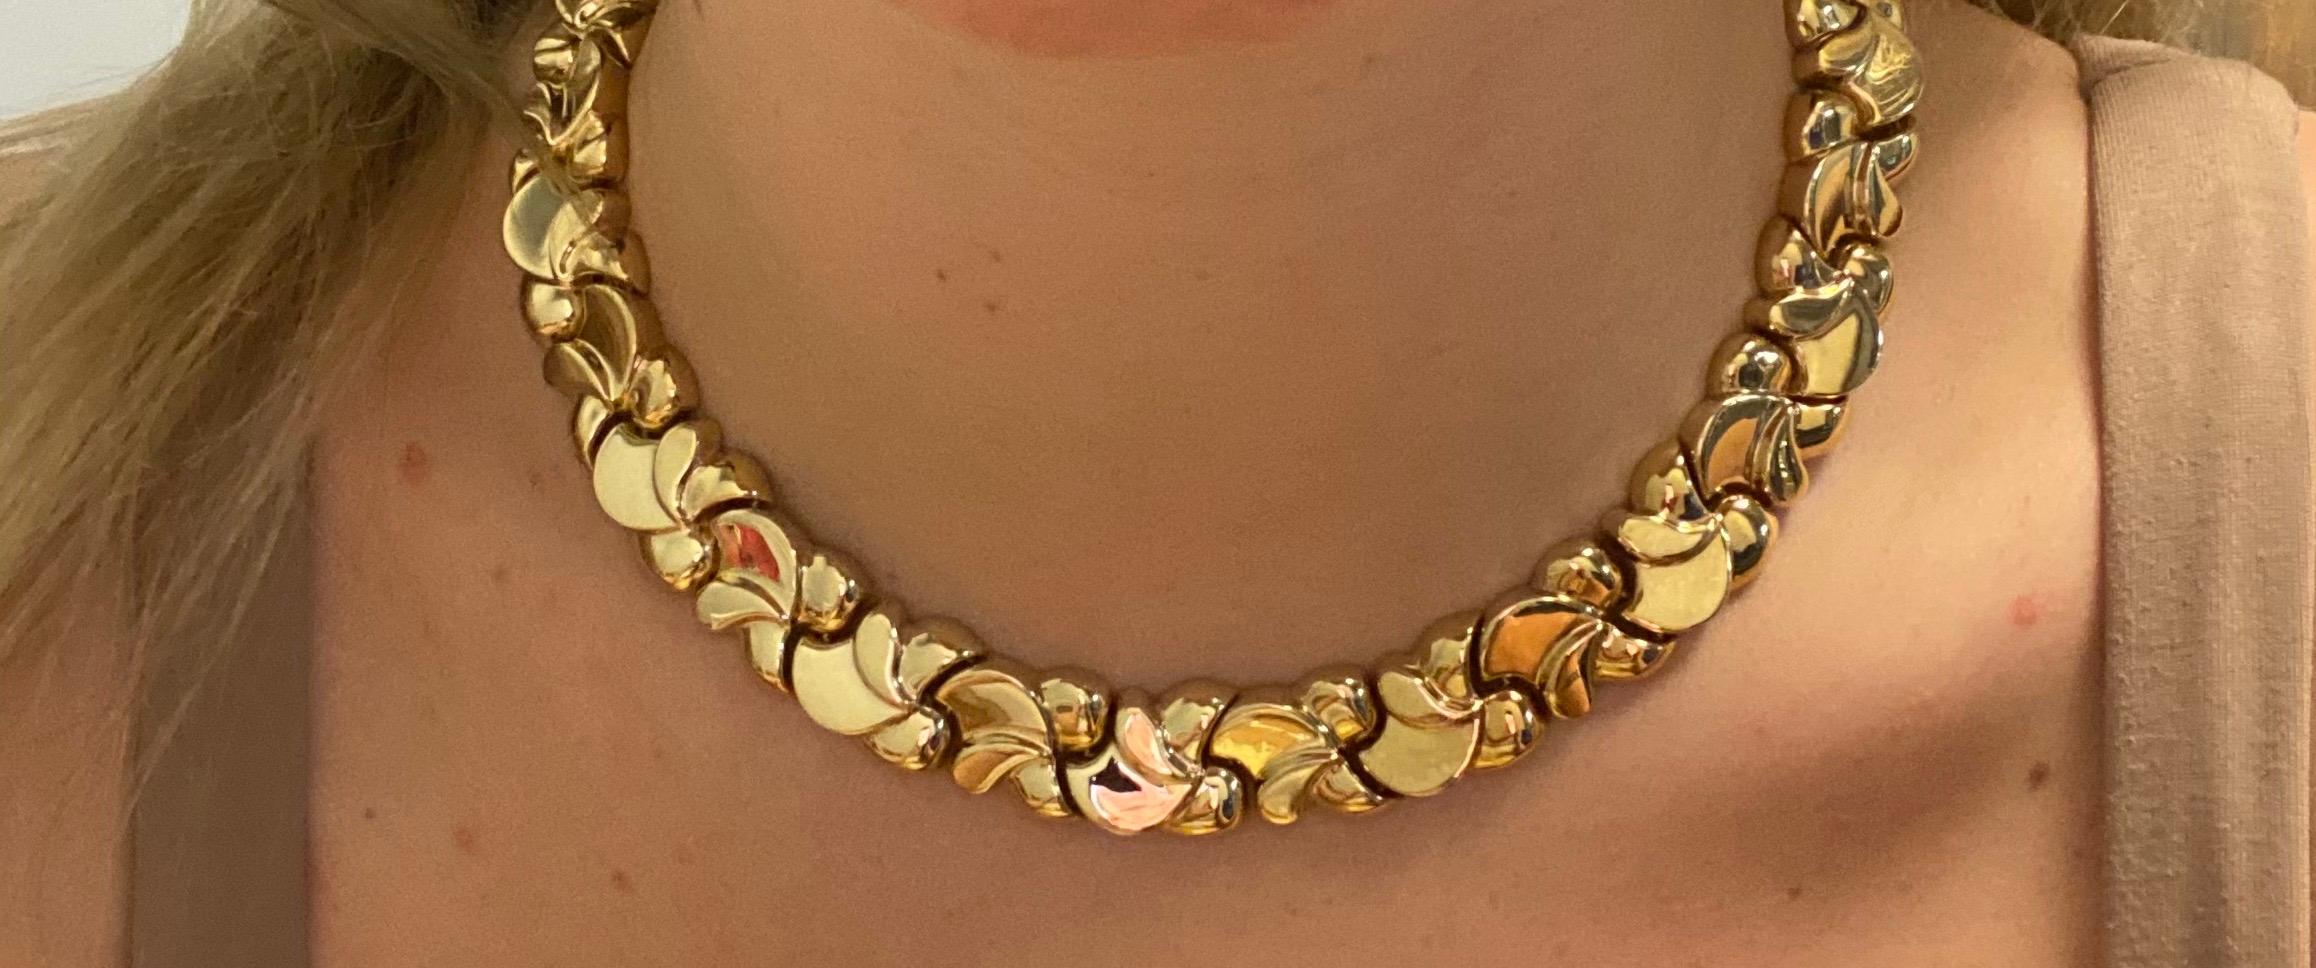 Vintage 2000's 14K Gelbgold Italienisch gemacht Choker Halskette und Armband Set - Die Halskette ist 16 cm lang und das Armband ist 7,25 cm lang. Die Breite der Glieder beträgt 0,50 Zoll. Beide verfügen über einen verdeckten Druckknopfverschluss mit